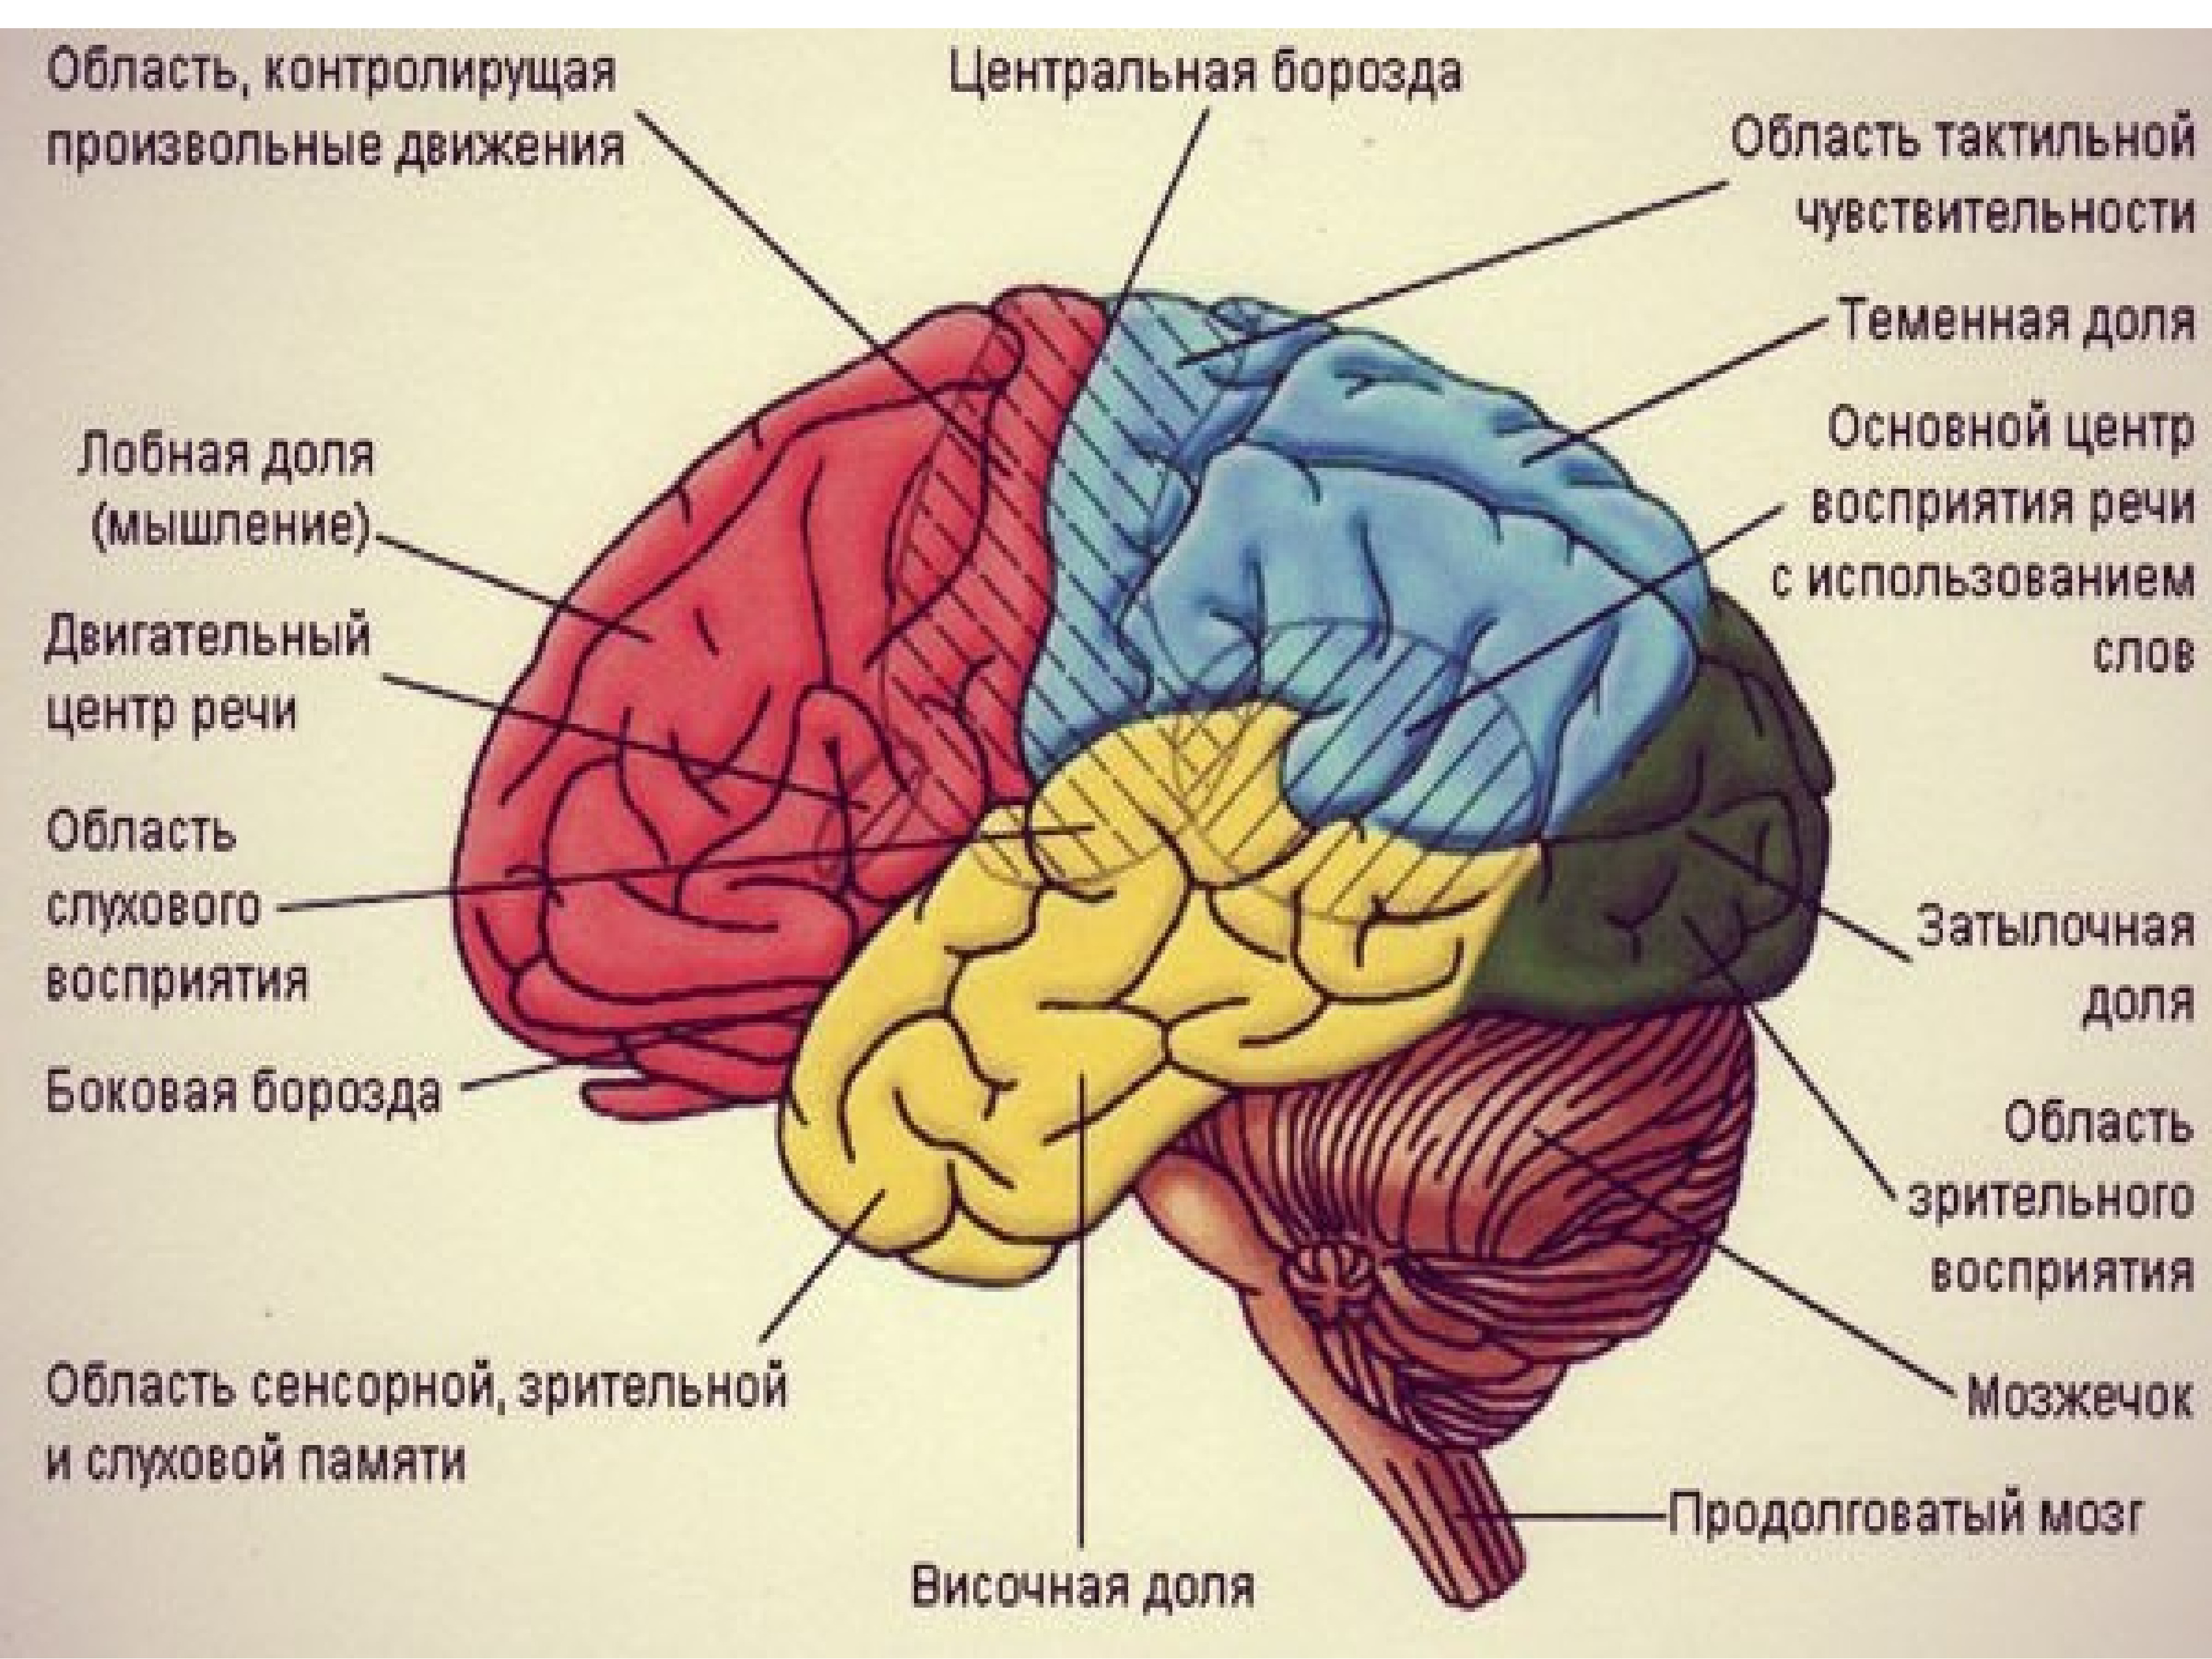 Центральная область мозга. Ассоциативные зоны головного мозга. Ассоциативные области коры больших полушарий. Центры долей мозга. Ассоциативные области коры большого мозга..